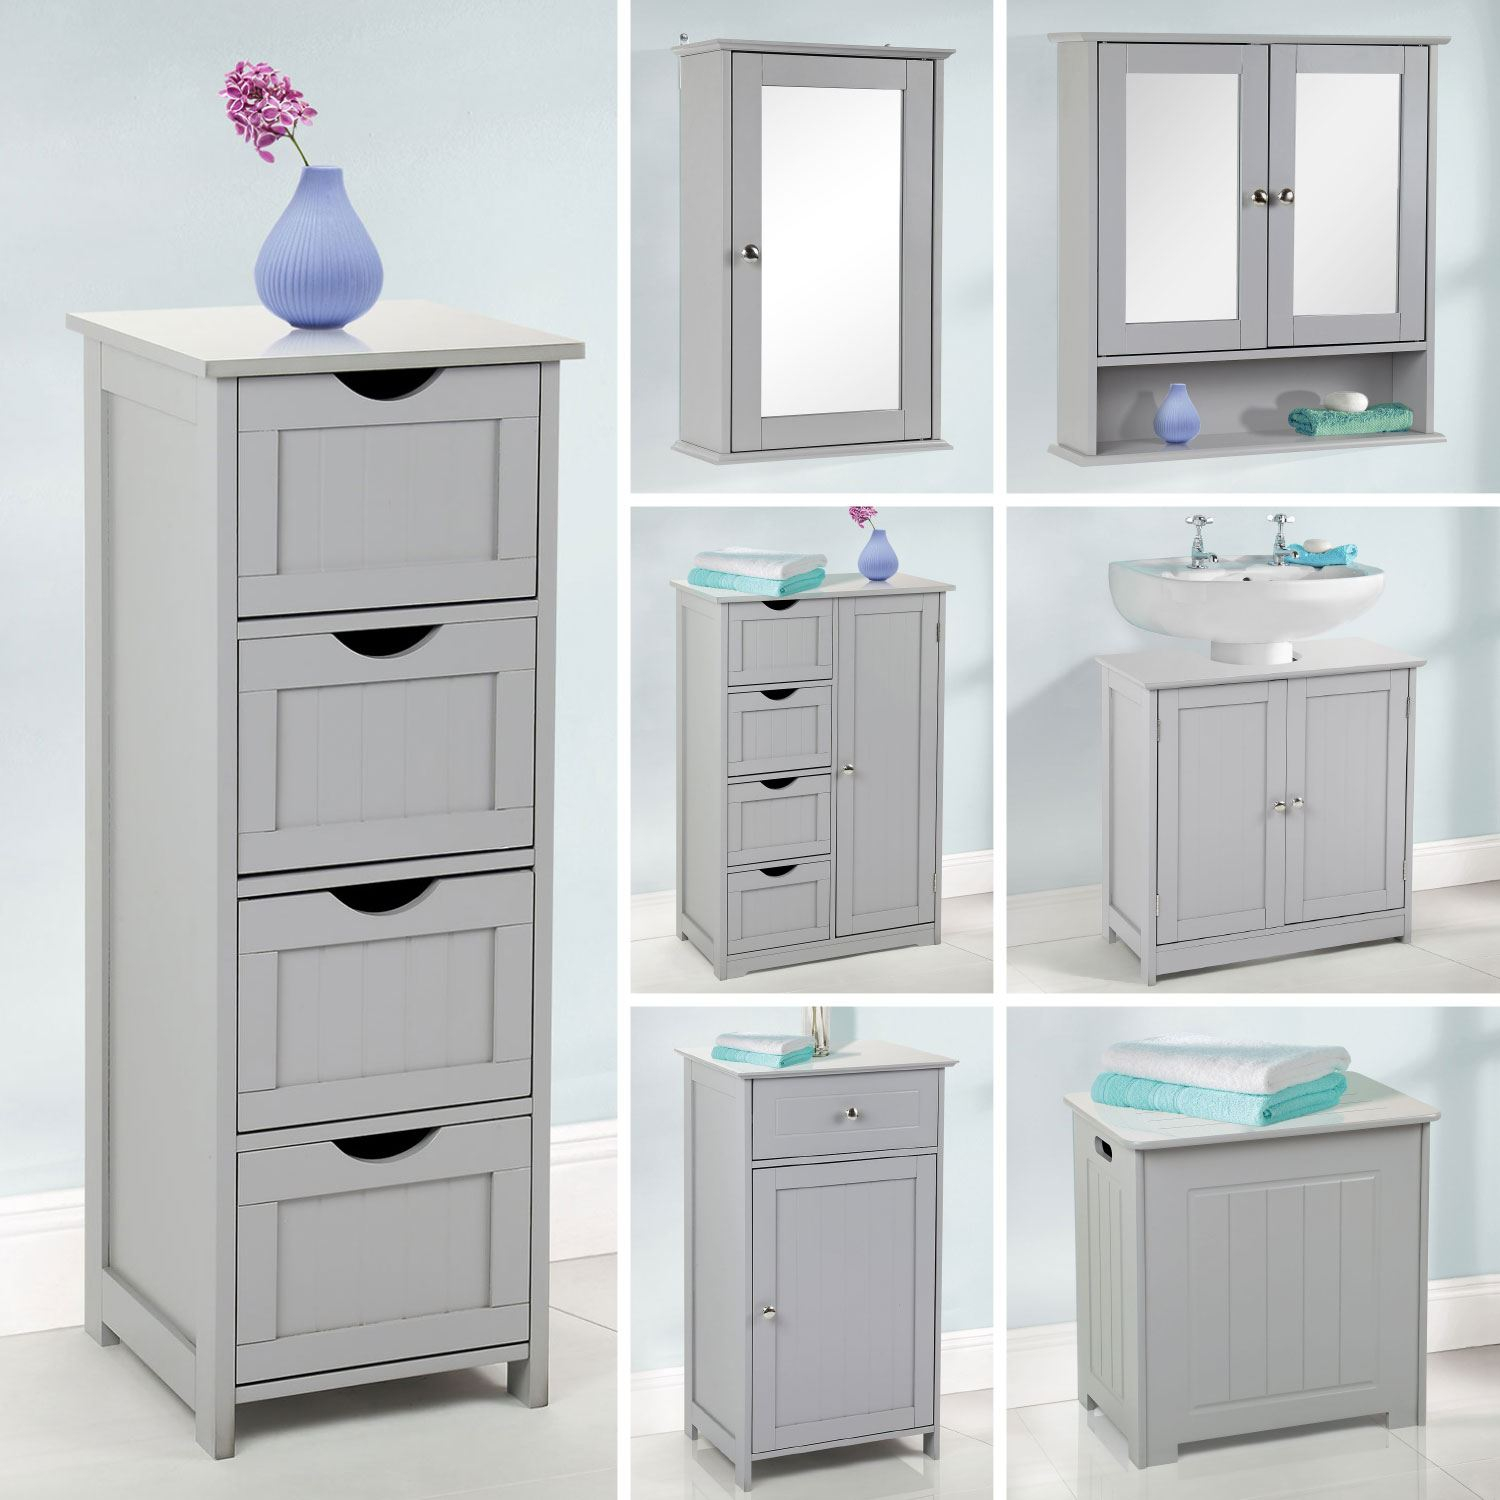 Details About Grey Wooden Bathroom Furniture Range Storage Cabinet Cupboard Under Sink Mirror in measurements 1500 X 1500